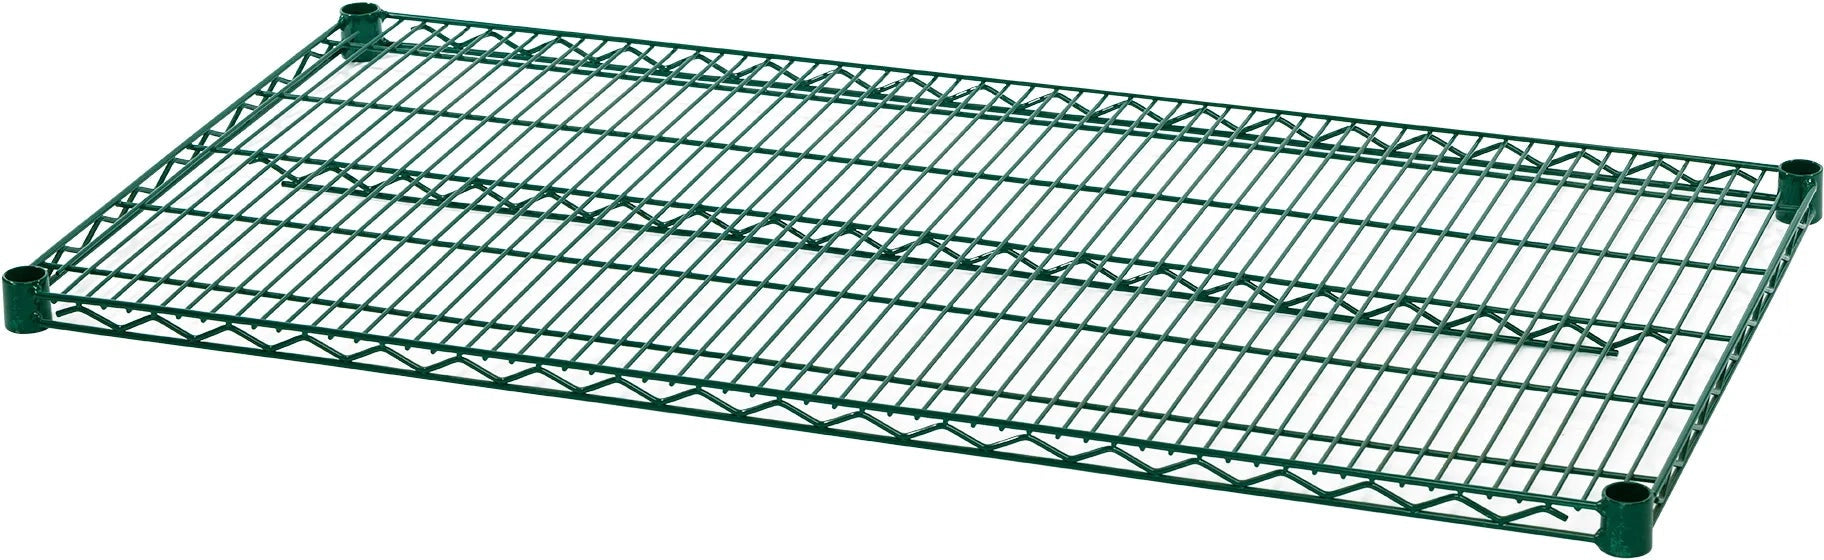 Julien - Rosko 72" x 18" Shelf For Wire Shelving, Green Epoxy - RO-WS-S7218-GE